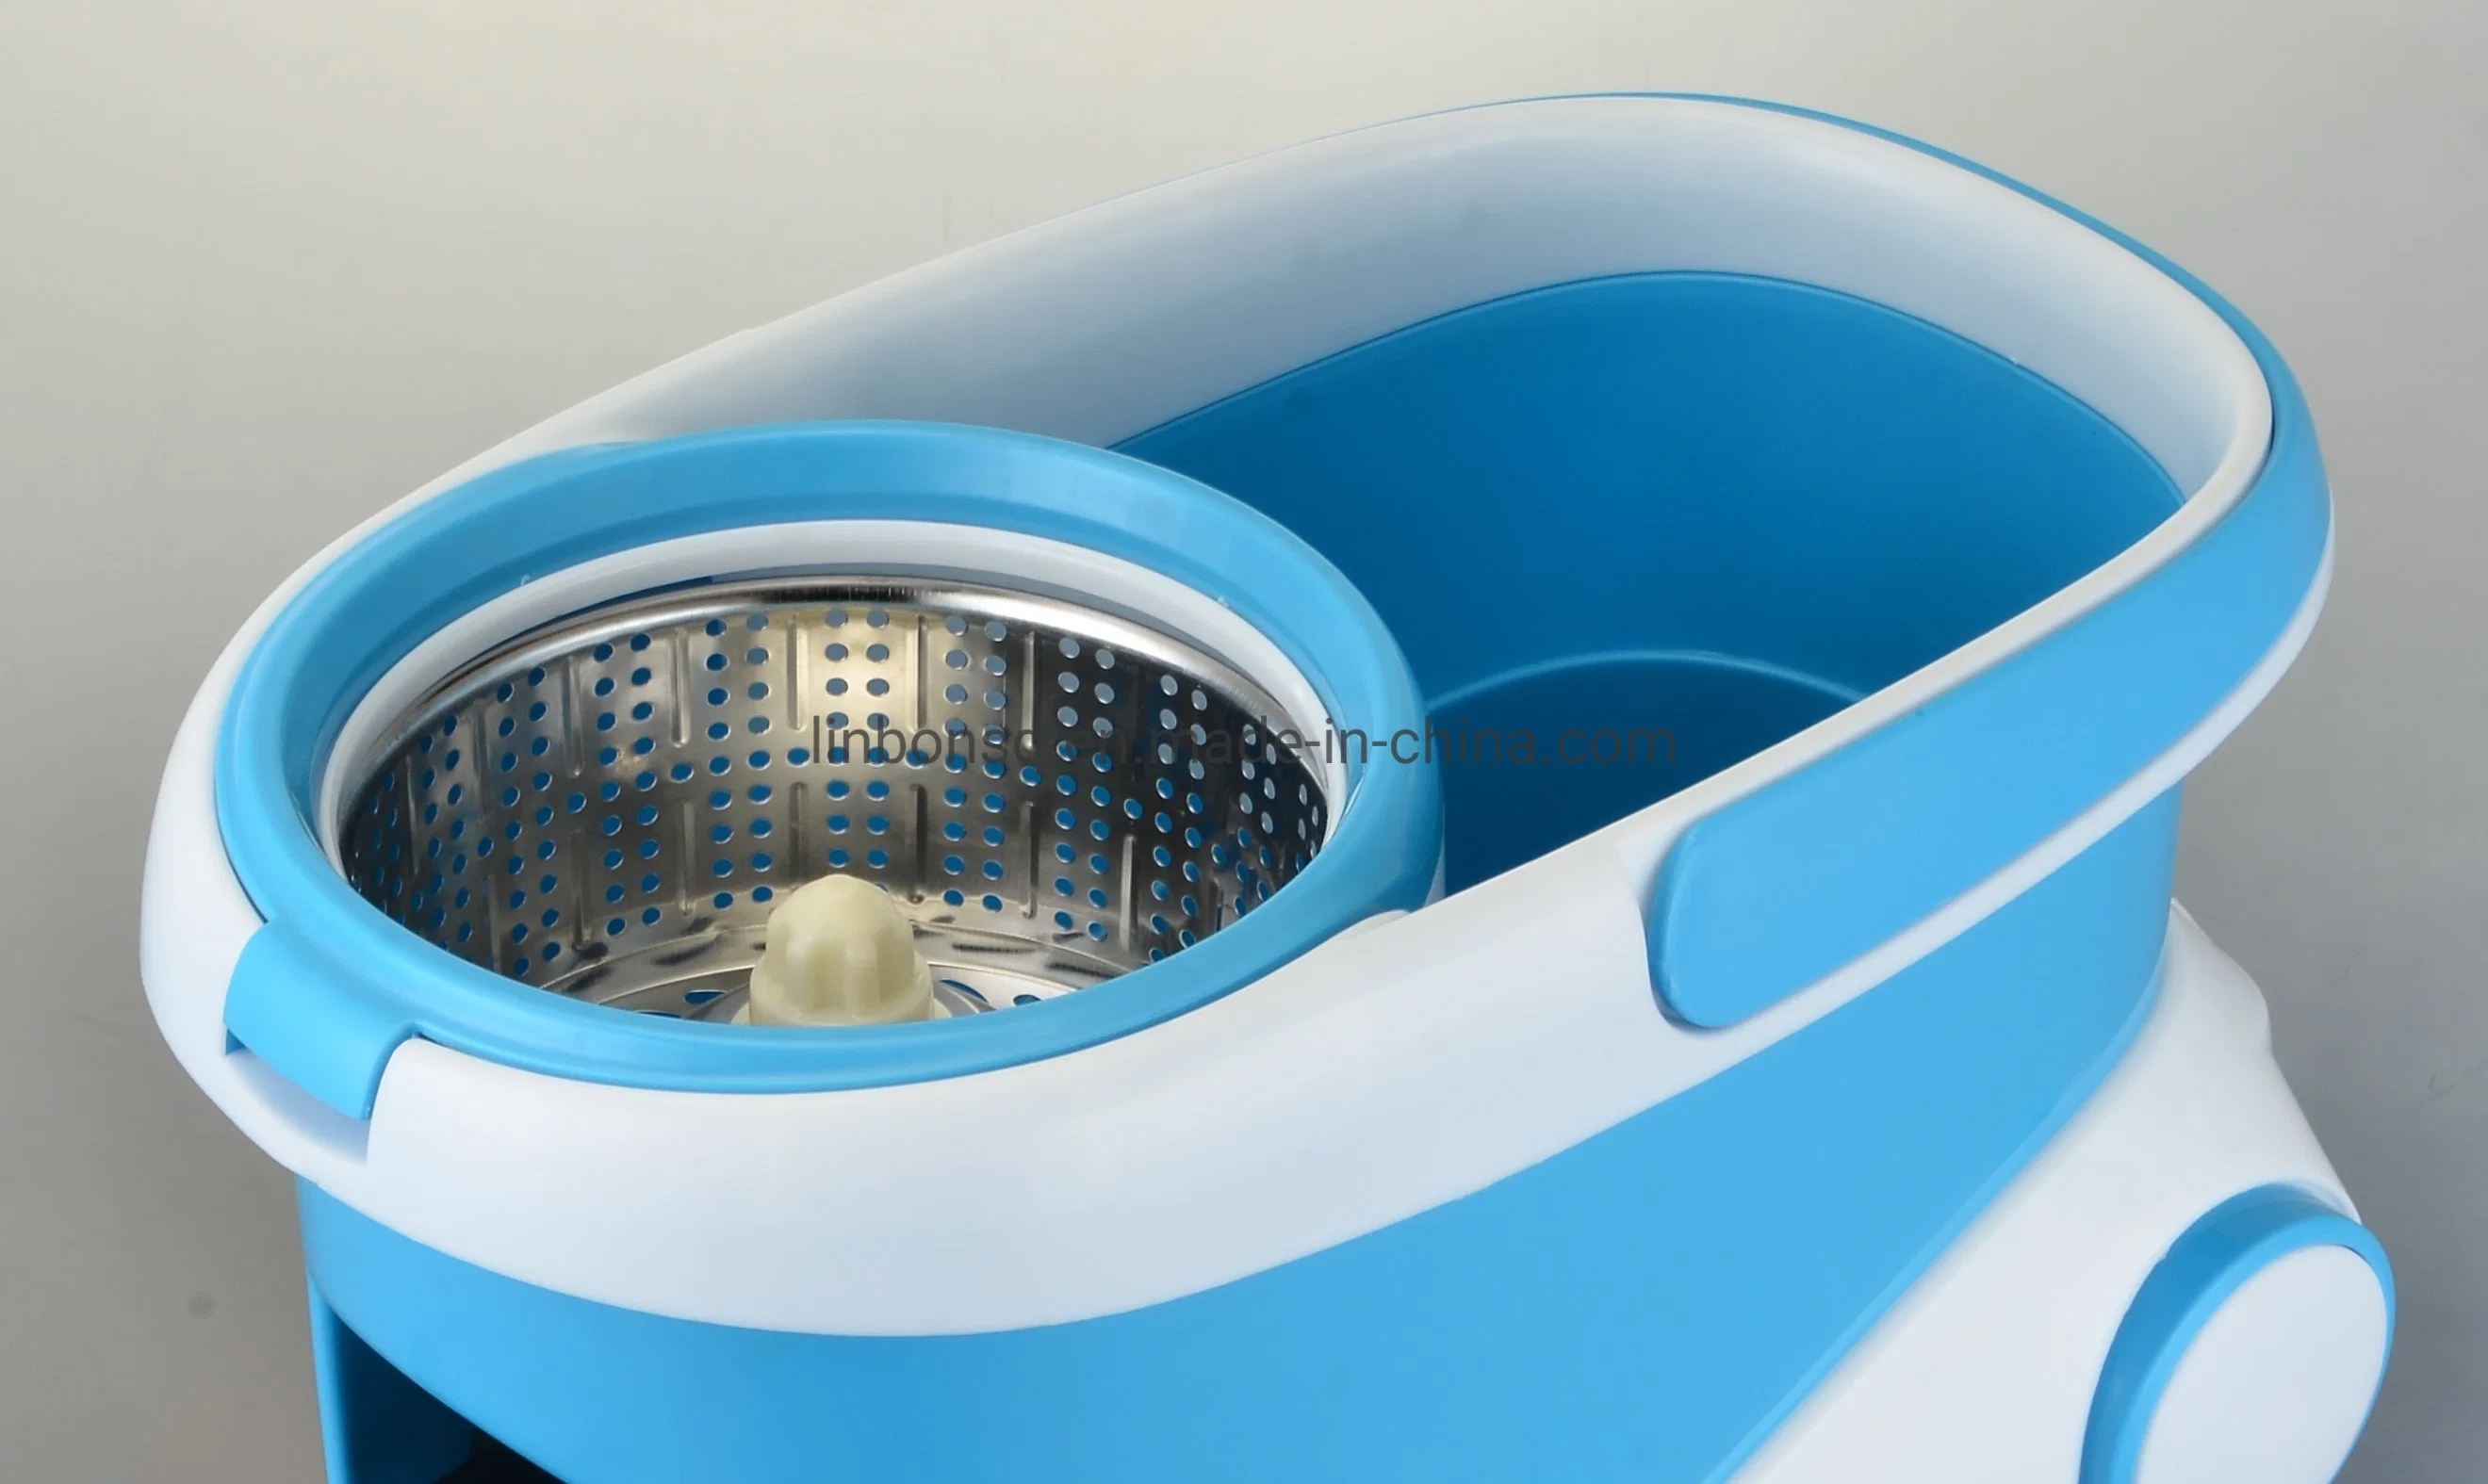 منتجات التنظيف المنزلية 360 الاستبدال Spin MOP مع الفولاذ المقاوم للصدأ الجرافة